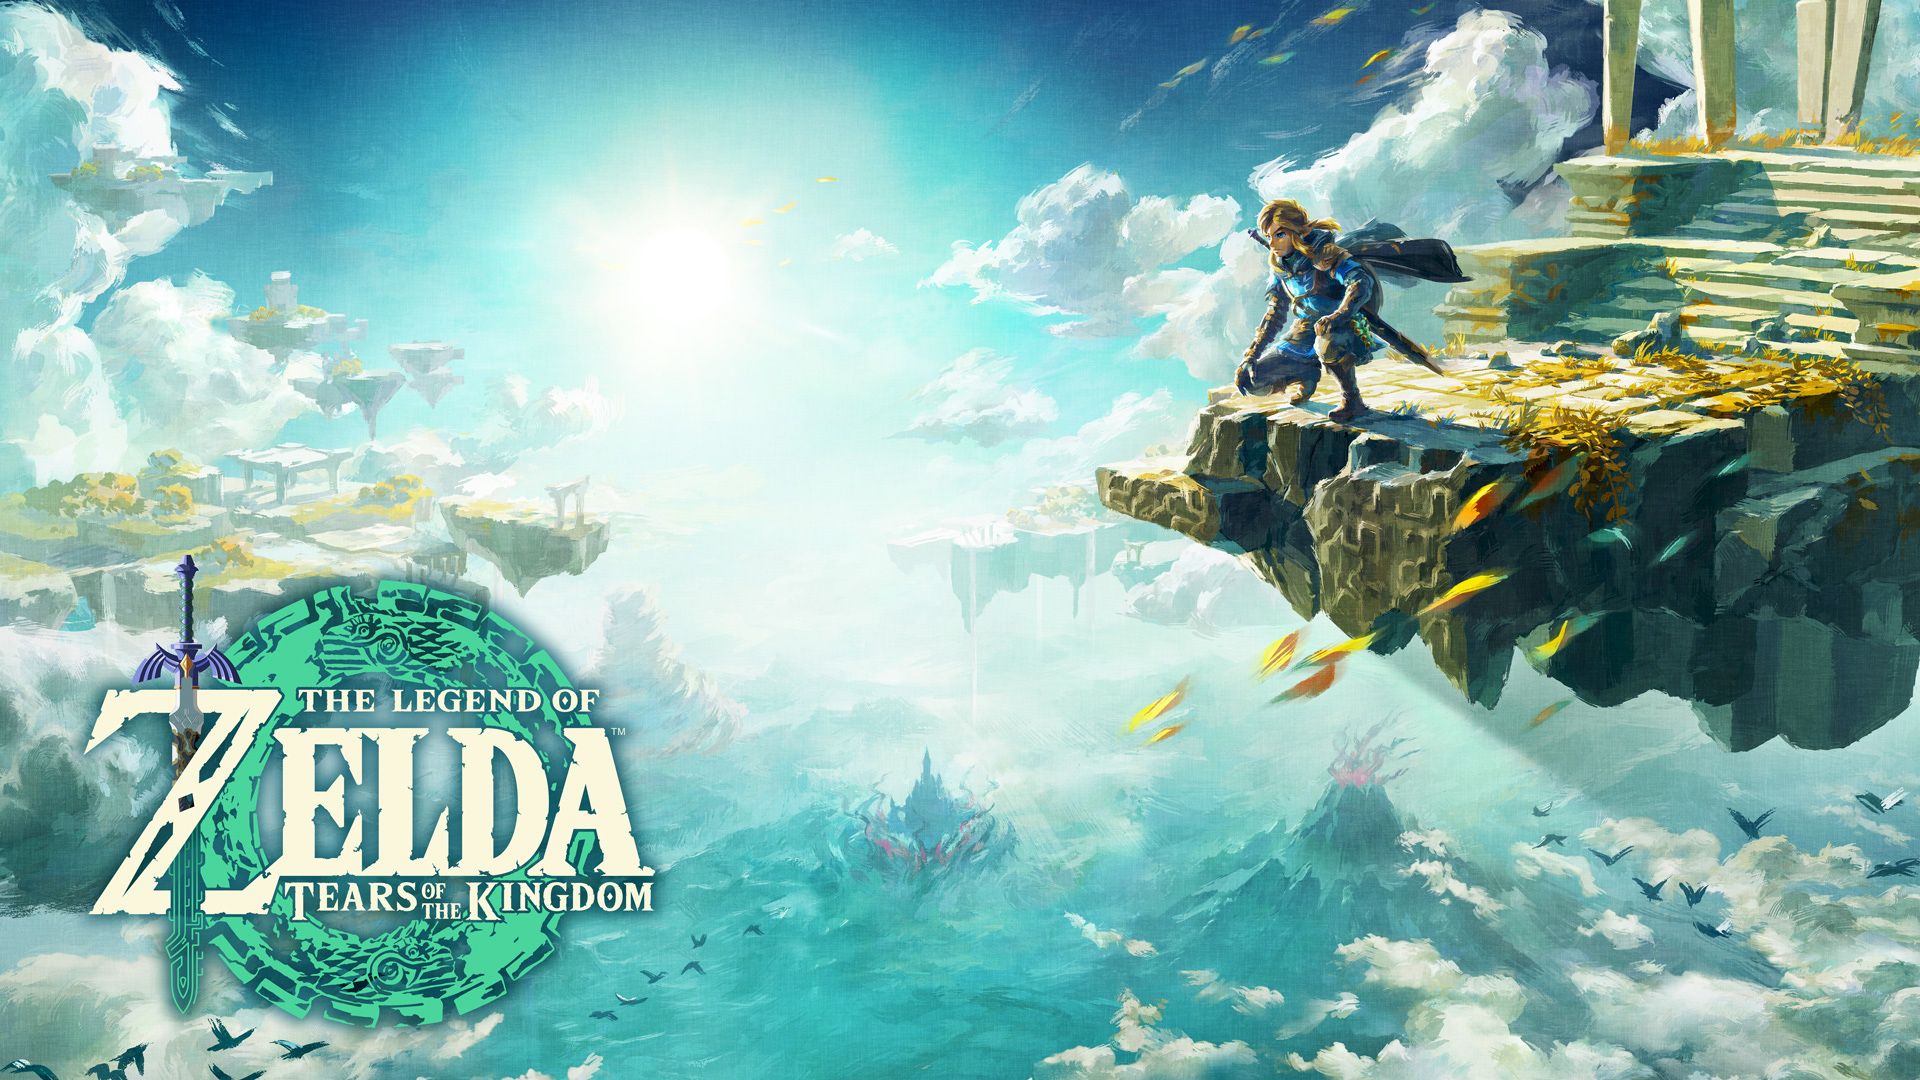 The Legend of Zelda: Tears of the Kingdom ทำยอดขายครบ 10 ล้านชุด ได้เร็วที่สุดในแฟรนไชส์เกม Zelda